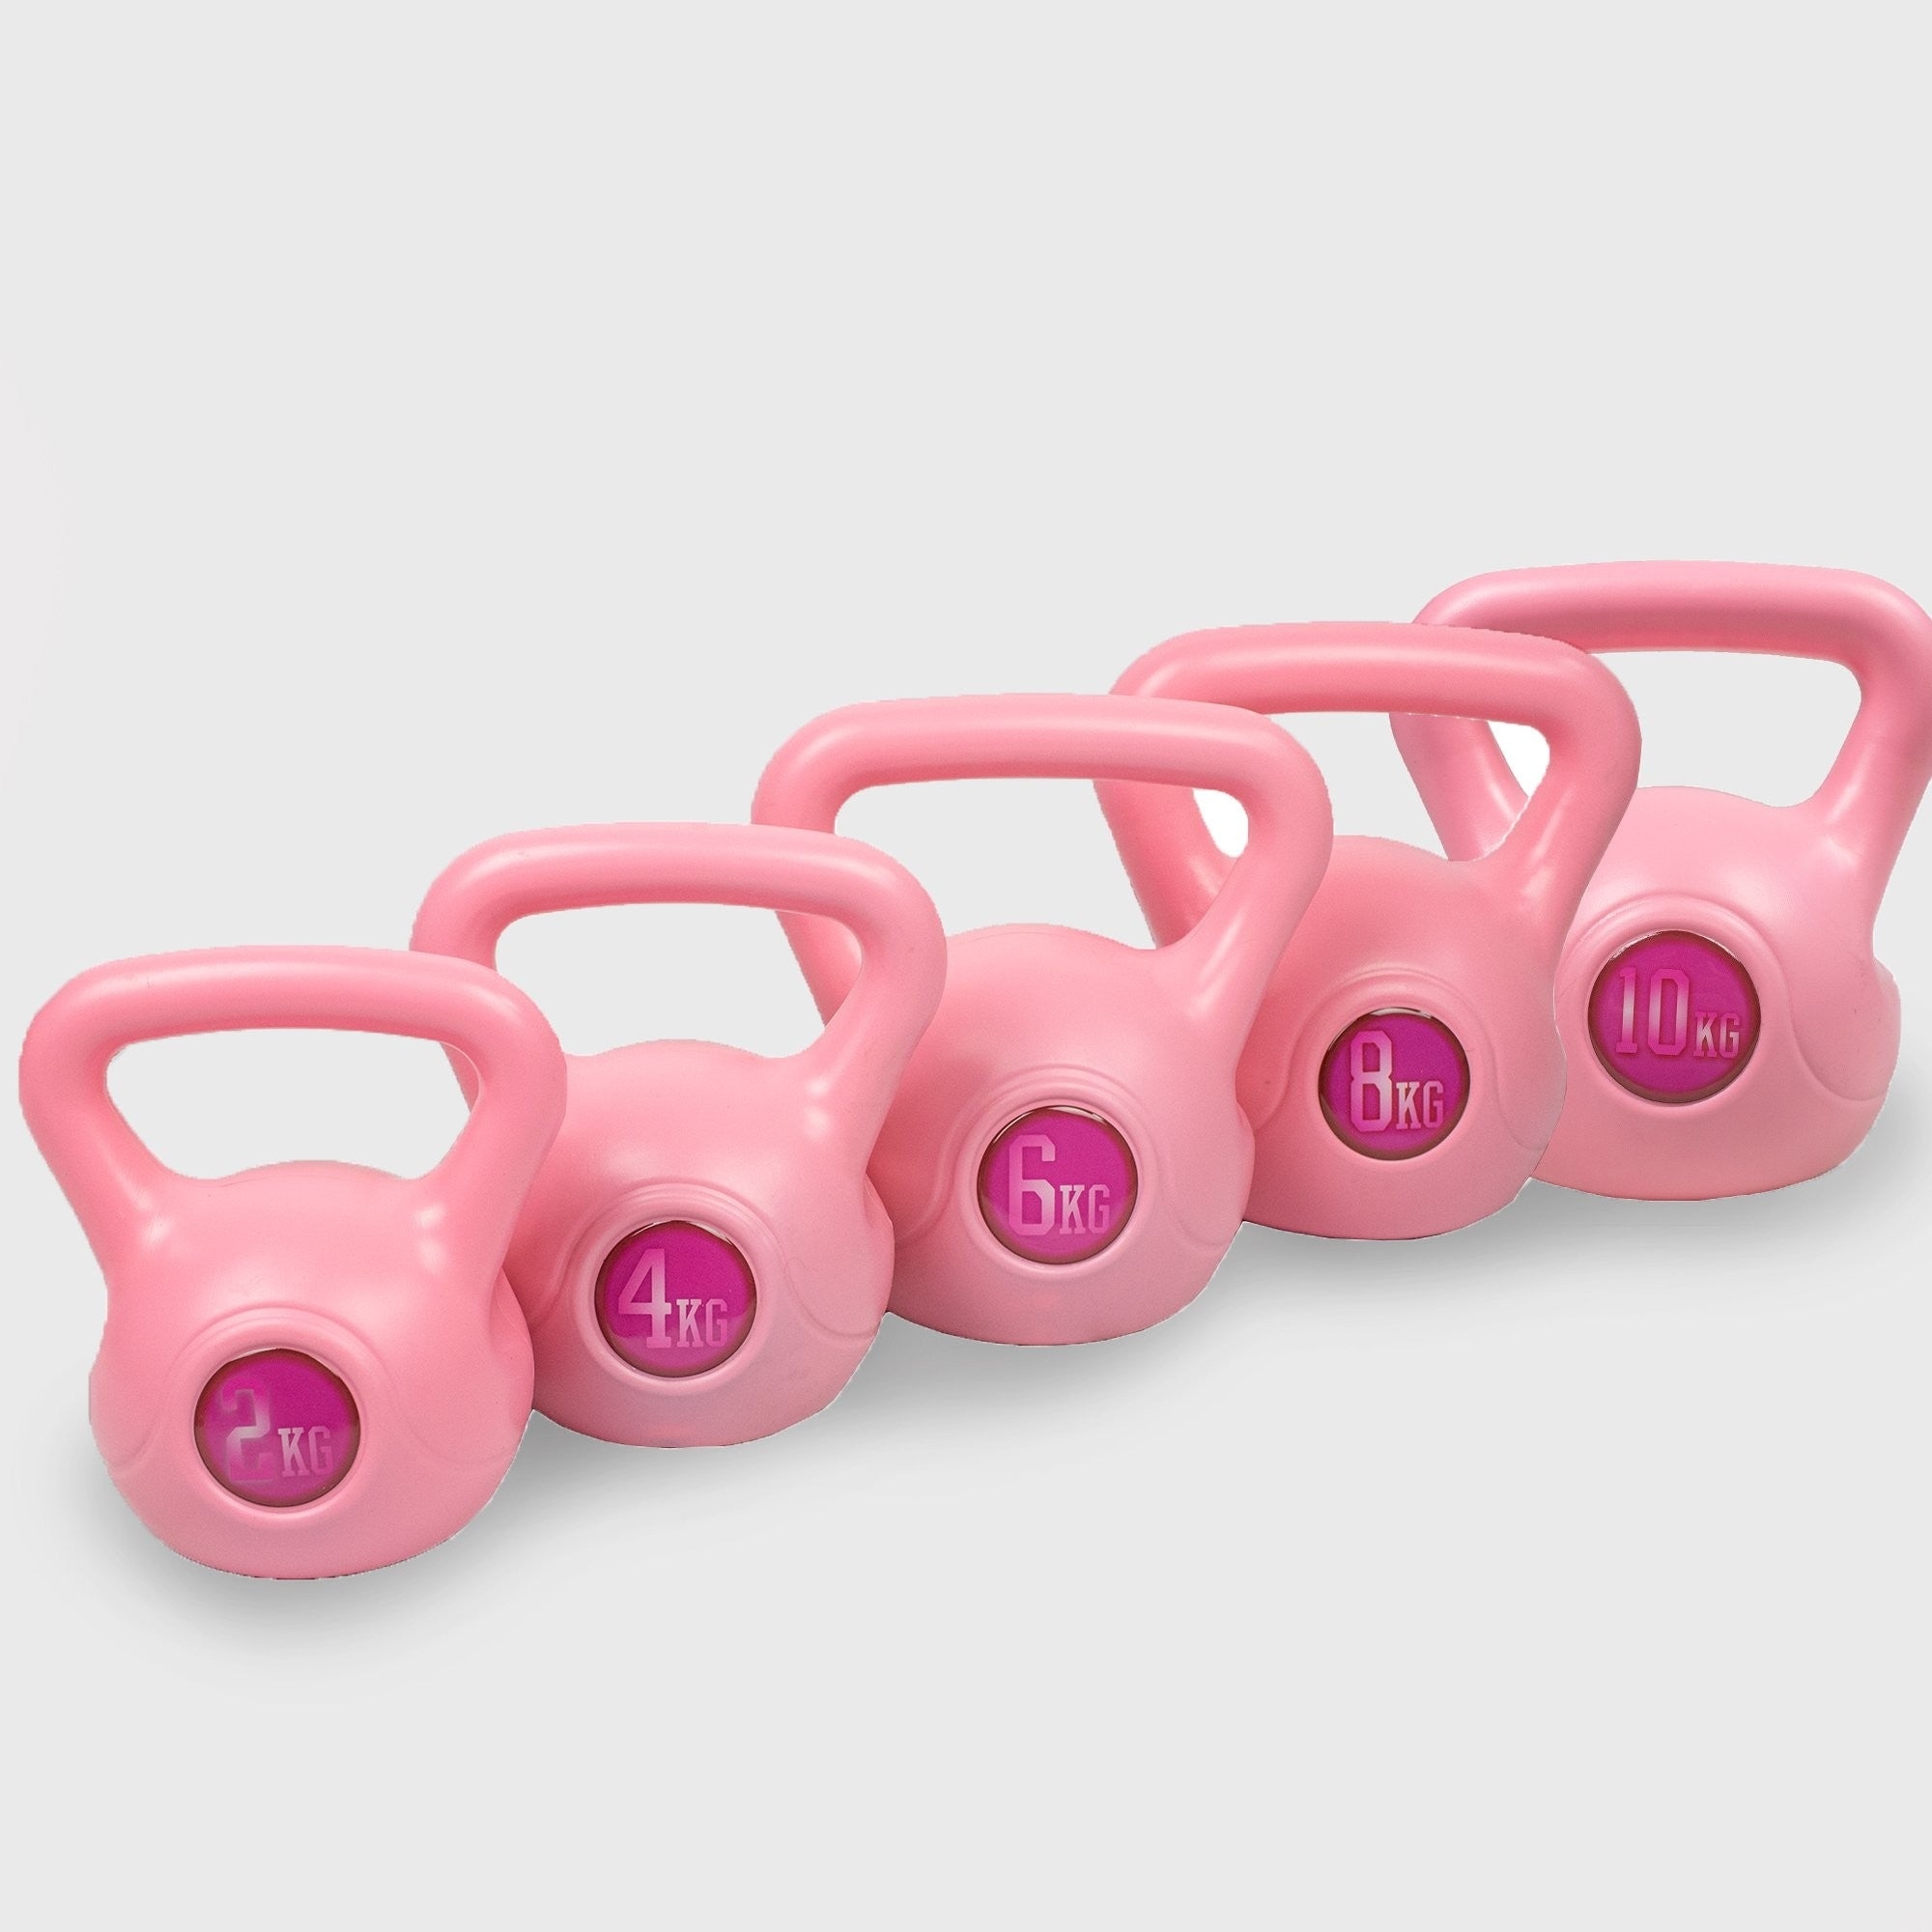 Pink Kettebells | Fitness Equipment Dublin Full set 2-12kg